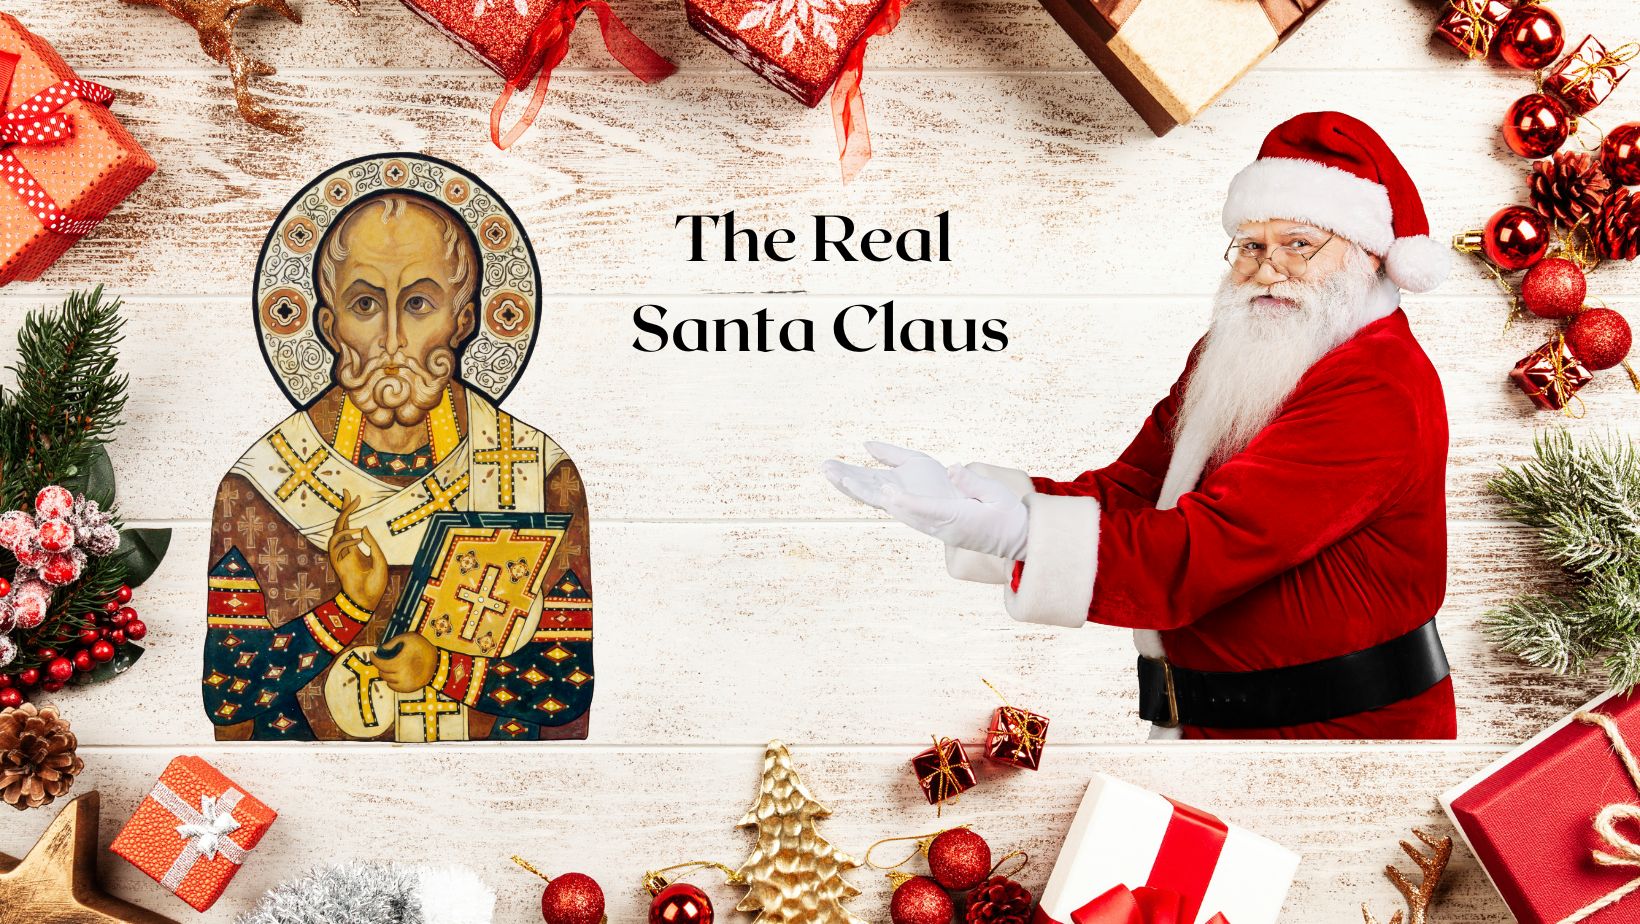 The Real Santa Claus